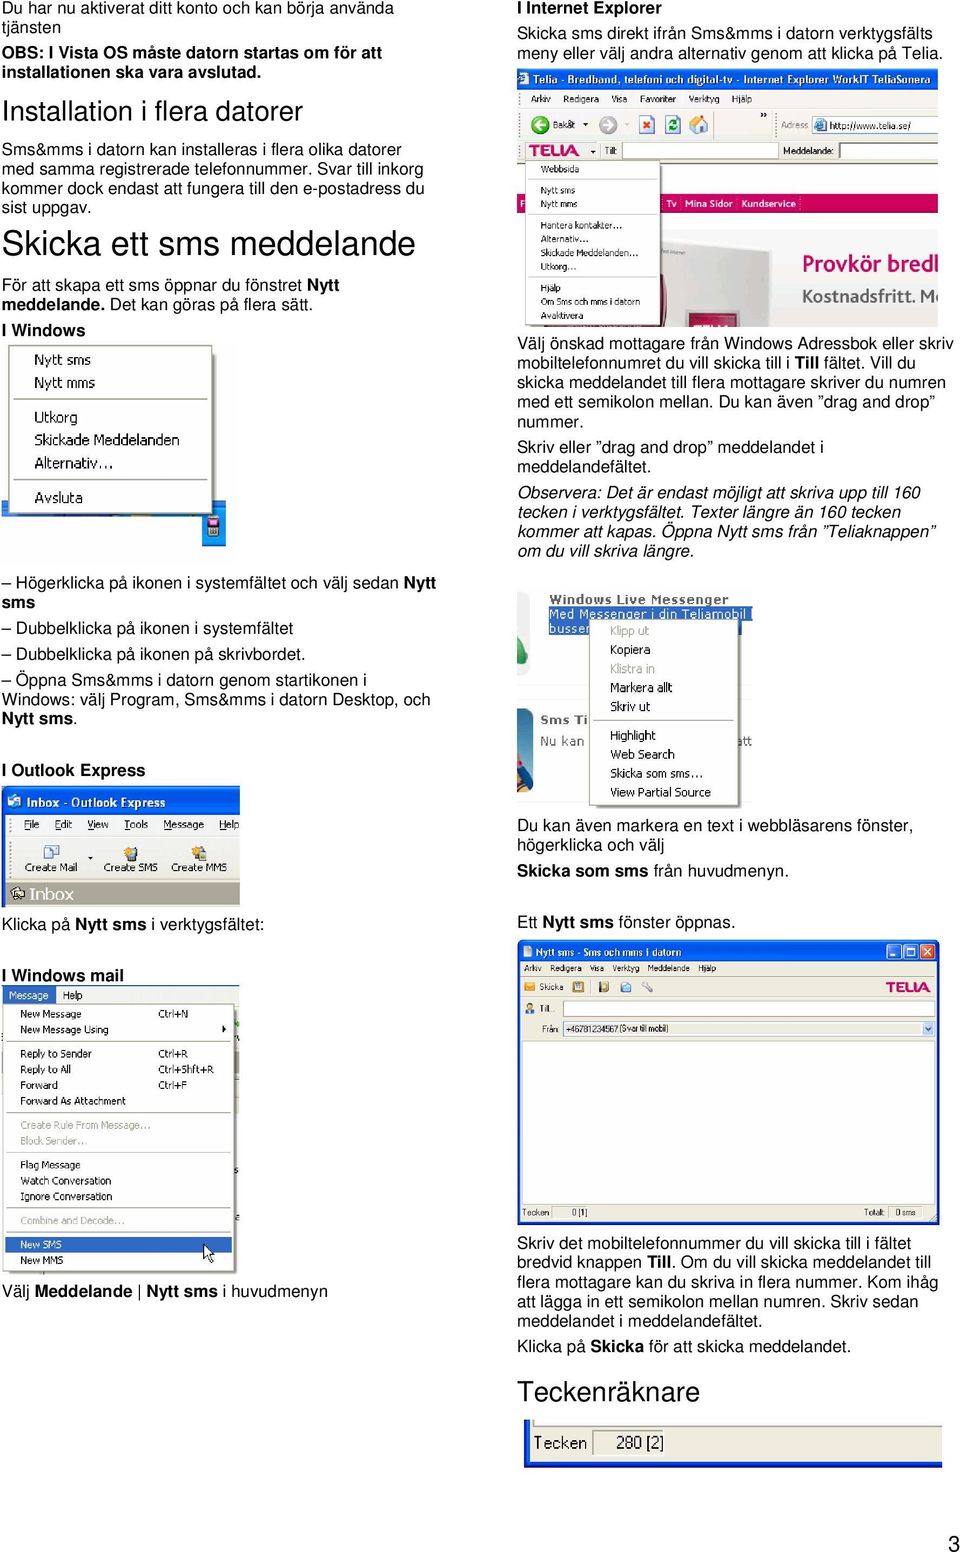 Sms&mms i datorn kan installeras i flera olika datorer med samma registrerade telefonnummer. Svar till inkorg kommer dock endast att fungera till den e-postadress du sist uppgav.